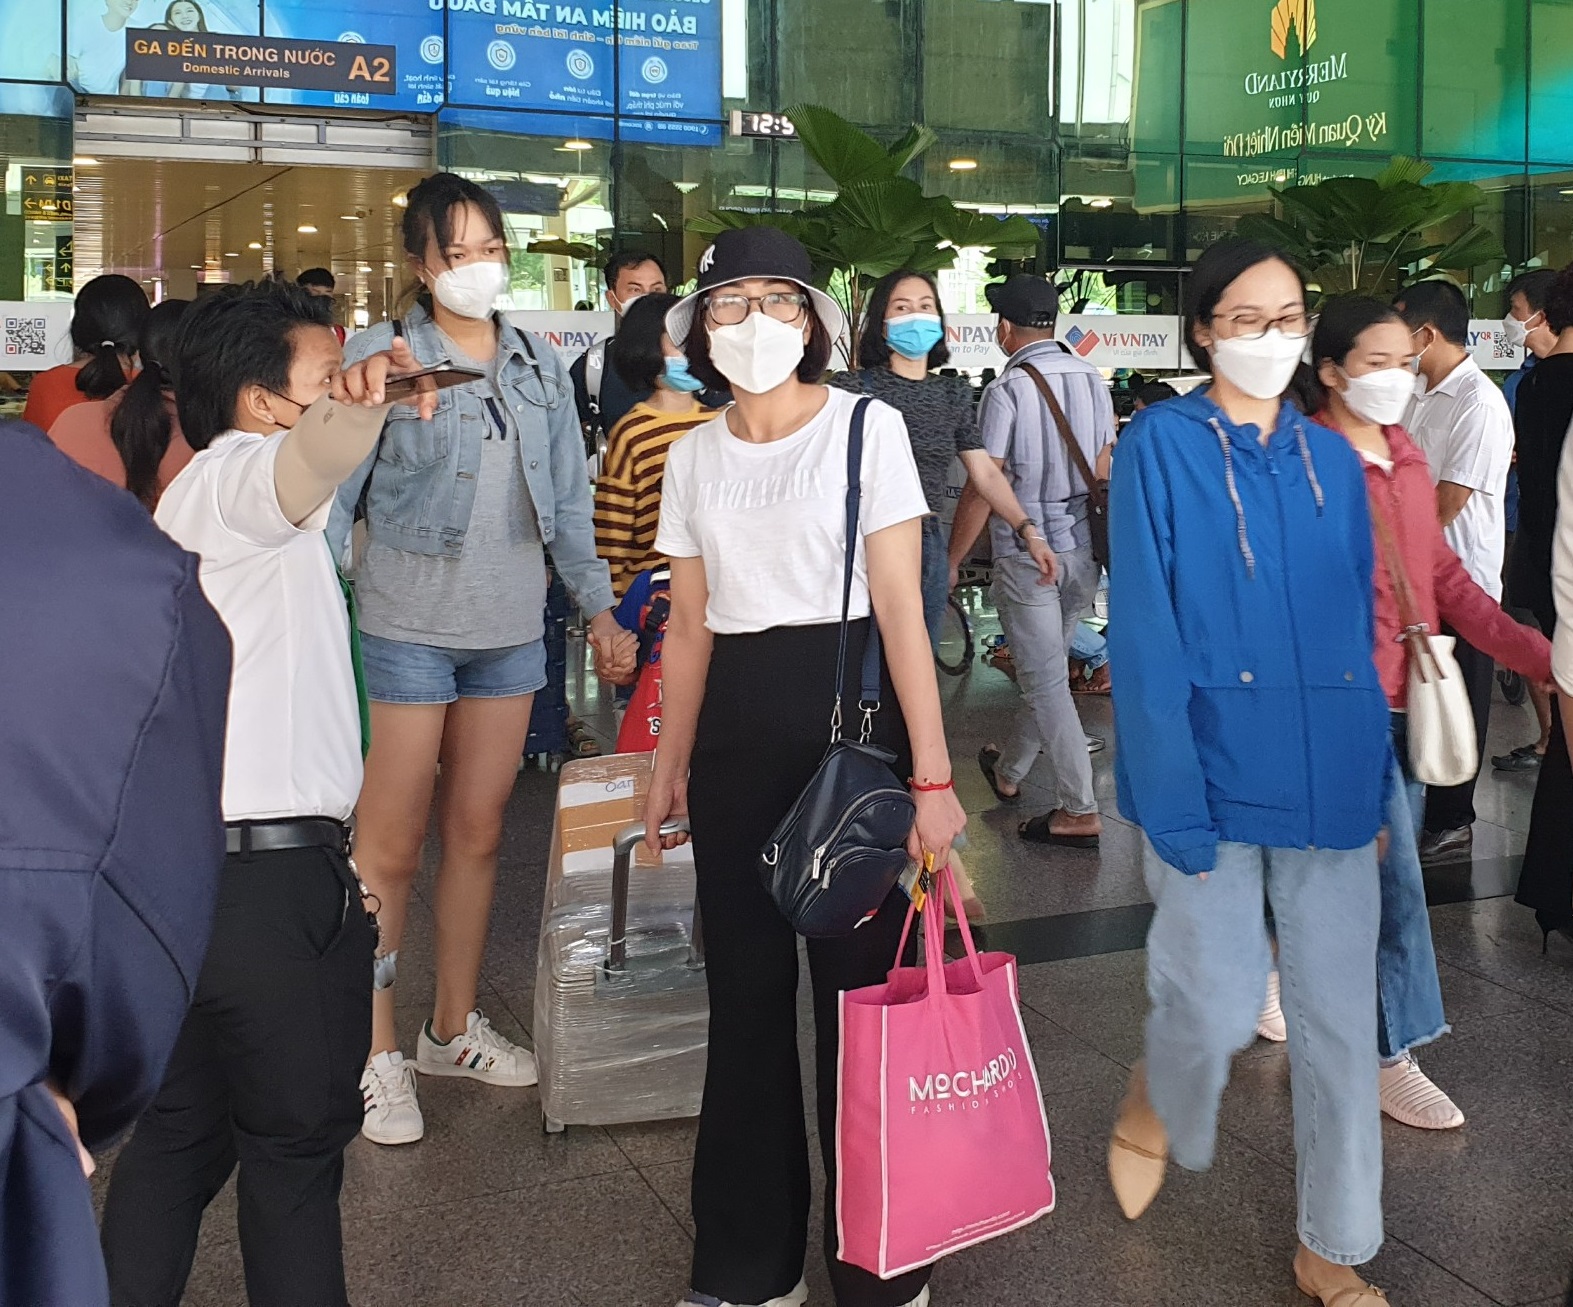 Hành khách đến sân bay Tân Sơn Nhất chủ yếu từ các địa phương có khu du lịch như Nha Trang, Huế, Khánh Hòa, Đà Nẵng...